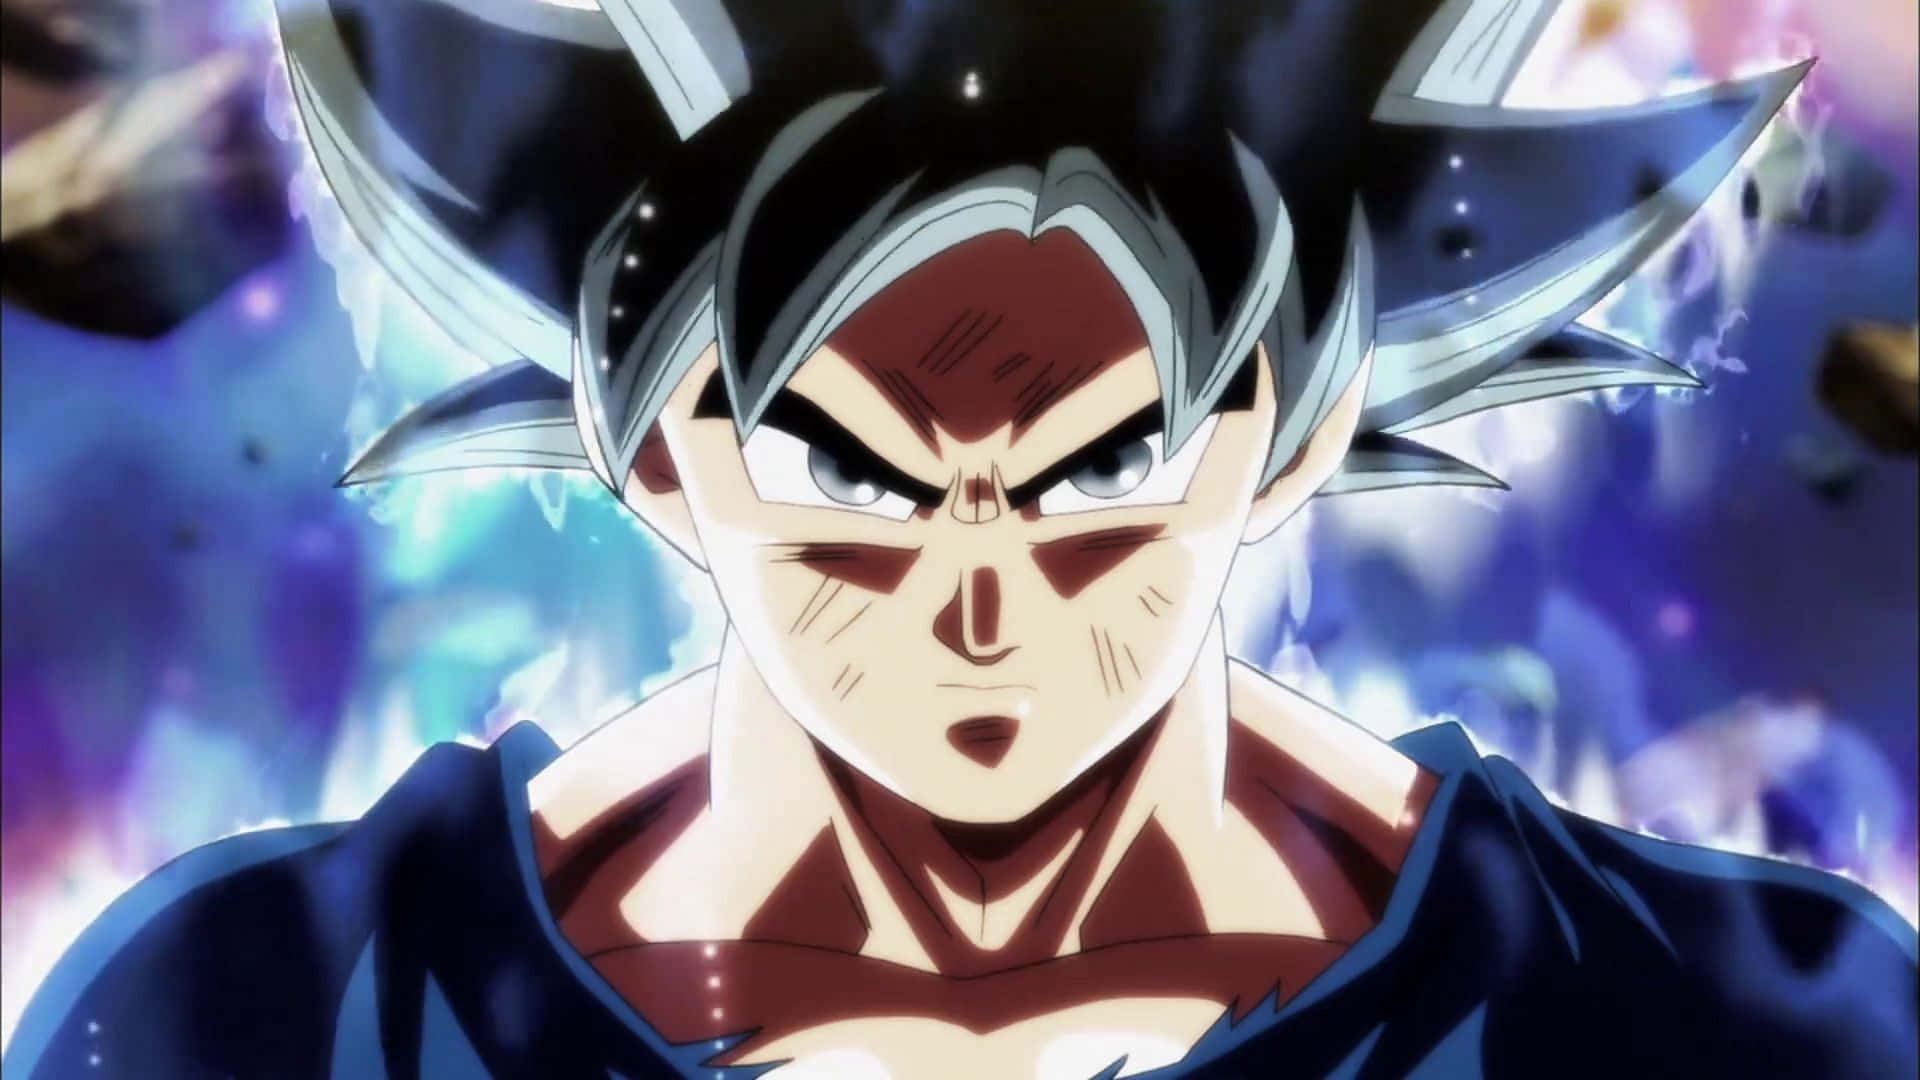 Losojos De Goku De Dragon Ball Super Se Vuelven Plateados Mientras Desbloquea El Poder Del Ultra Instinto.